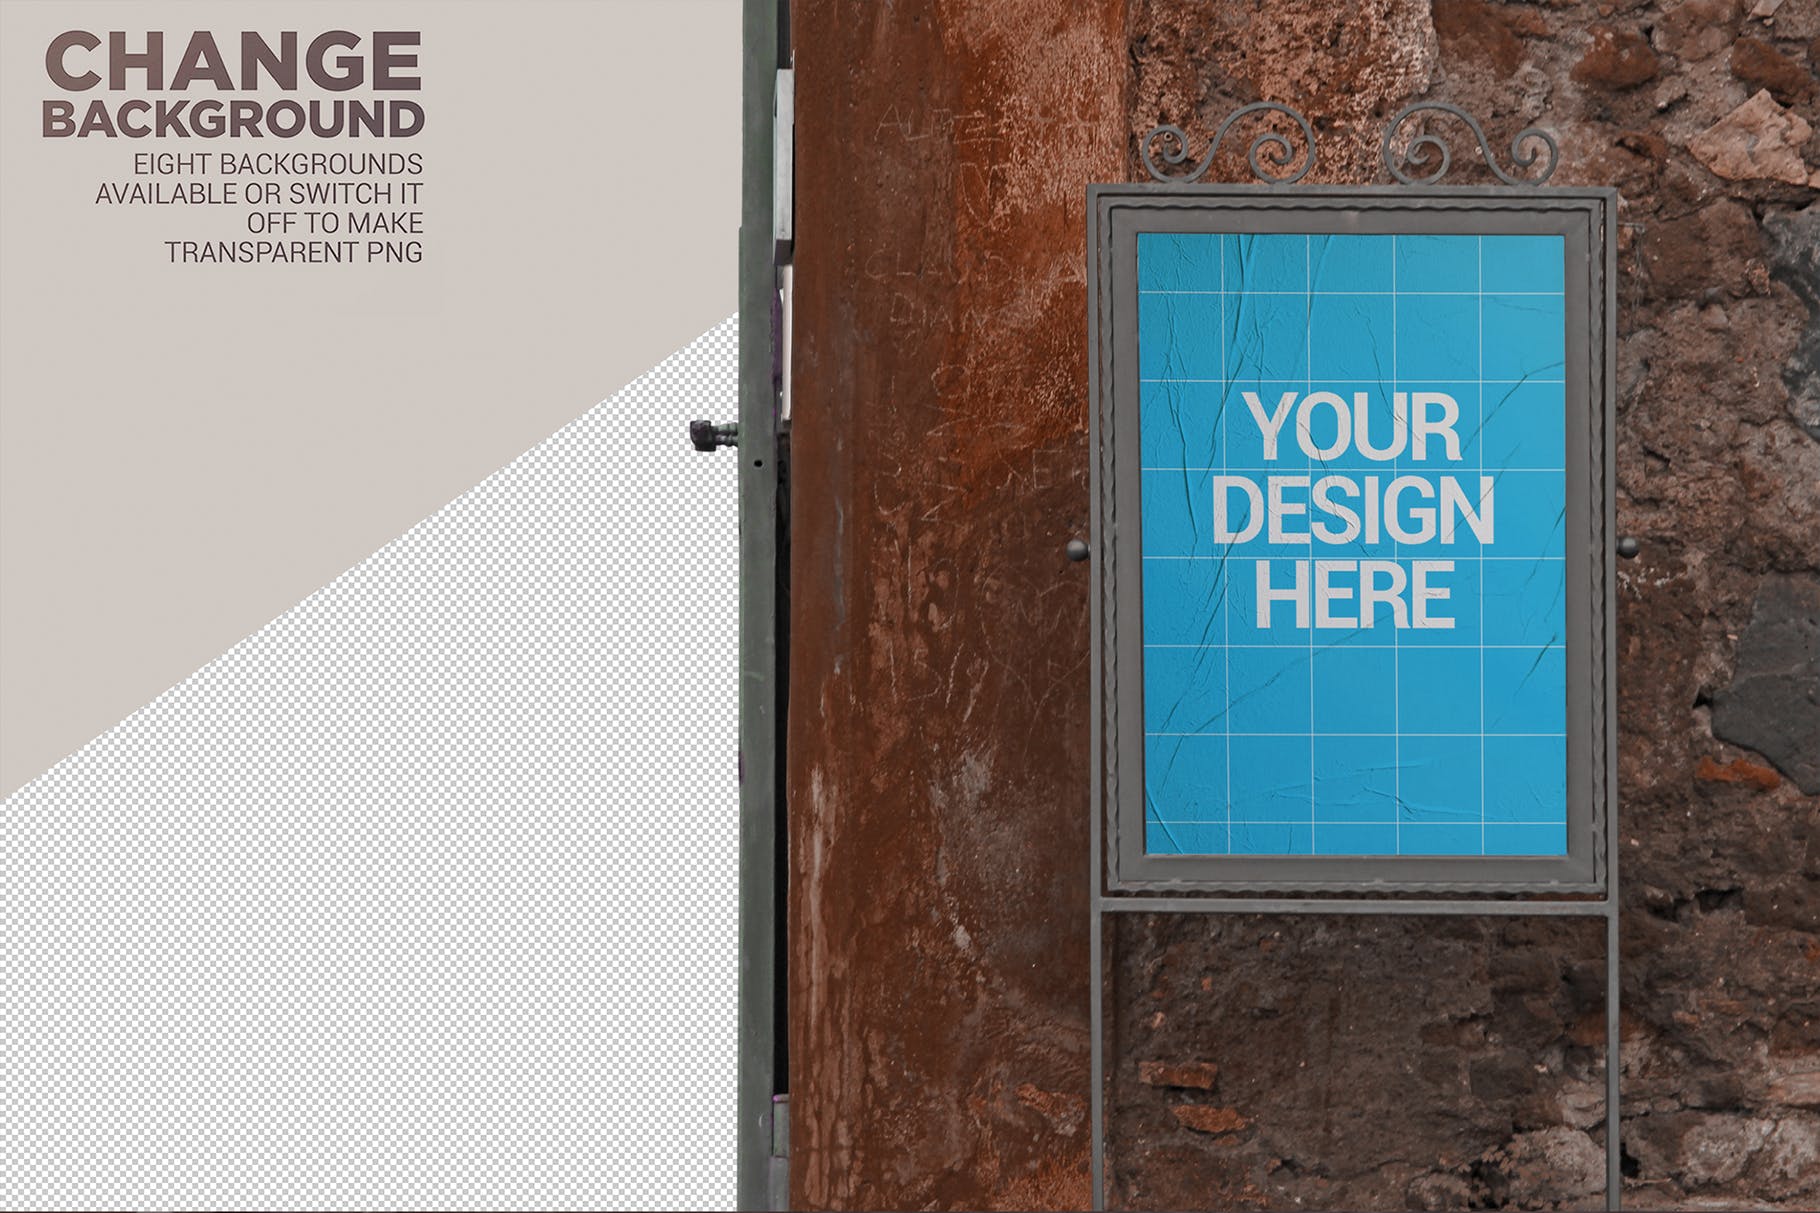 室外入口处海报设计张贴效果图样机模板 Outdoor Entrance Poster Backgrounds插图(1)